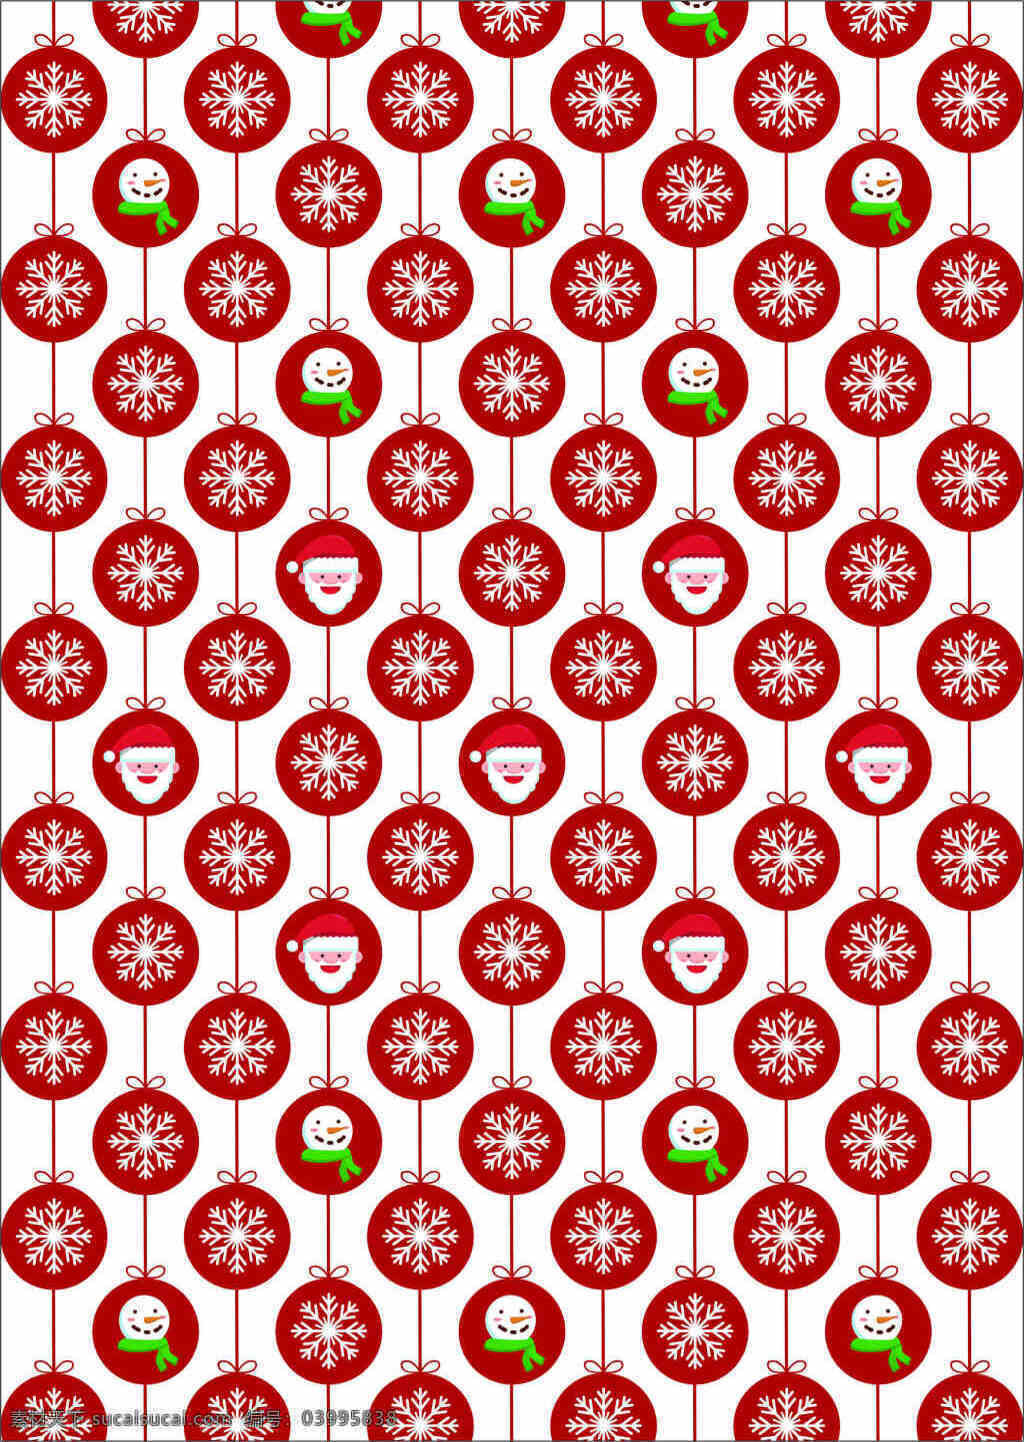 圣诞节 圣诞挂球 圣诞老人 雪人 红色圆球 雪花